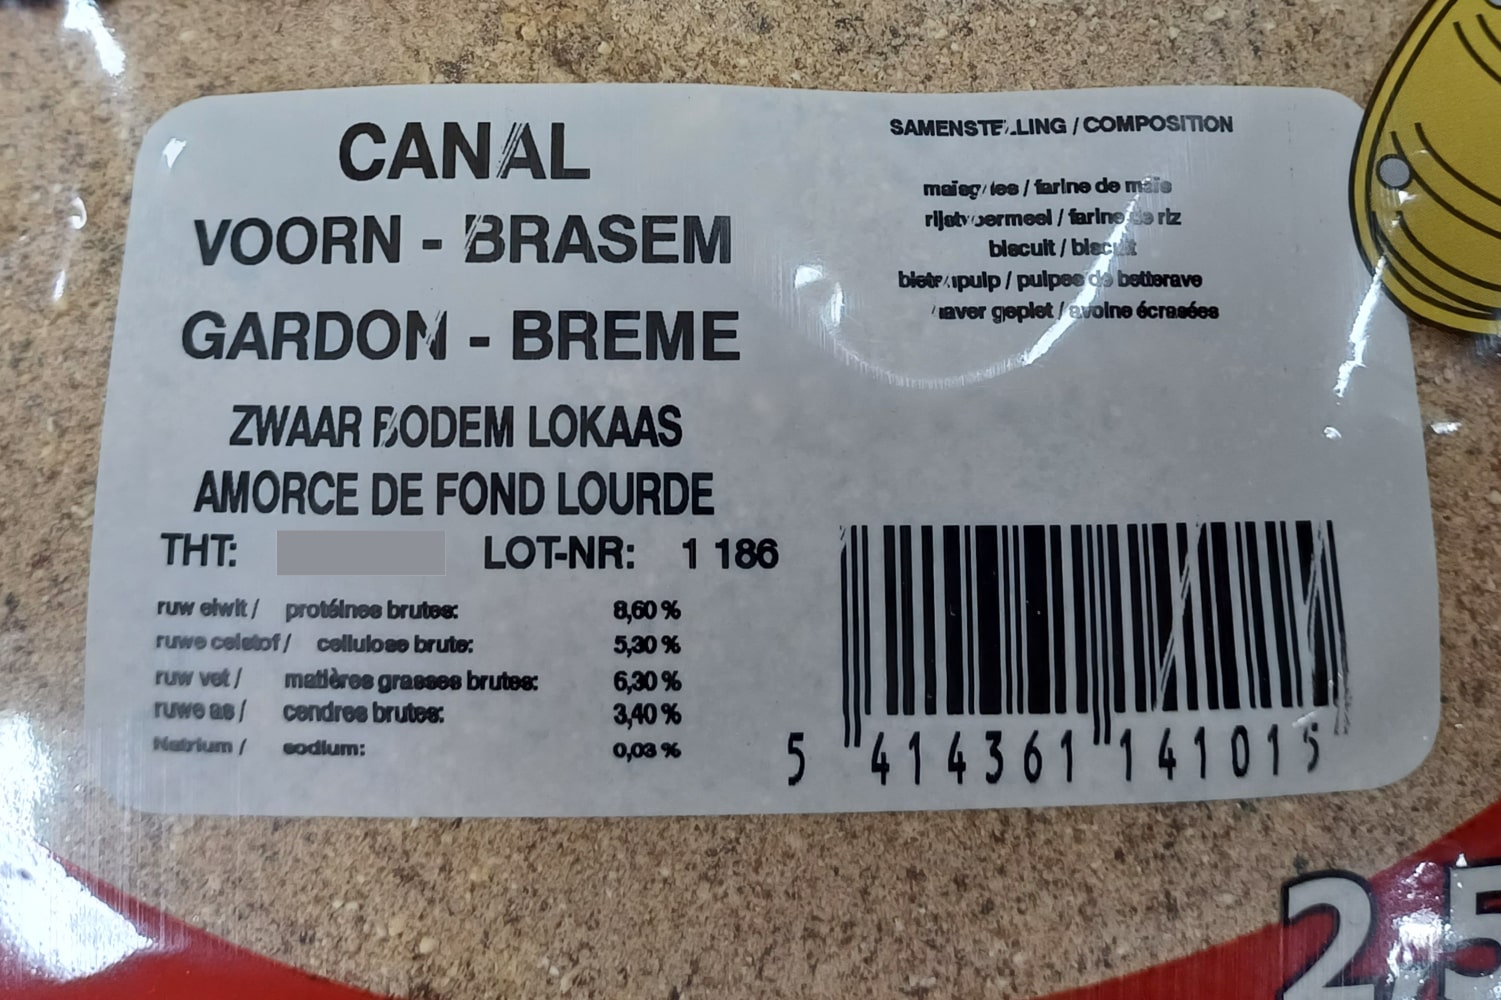 eurofish kanaal 2.5kg